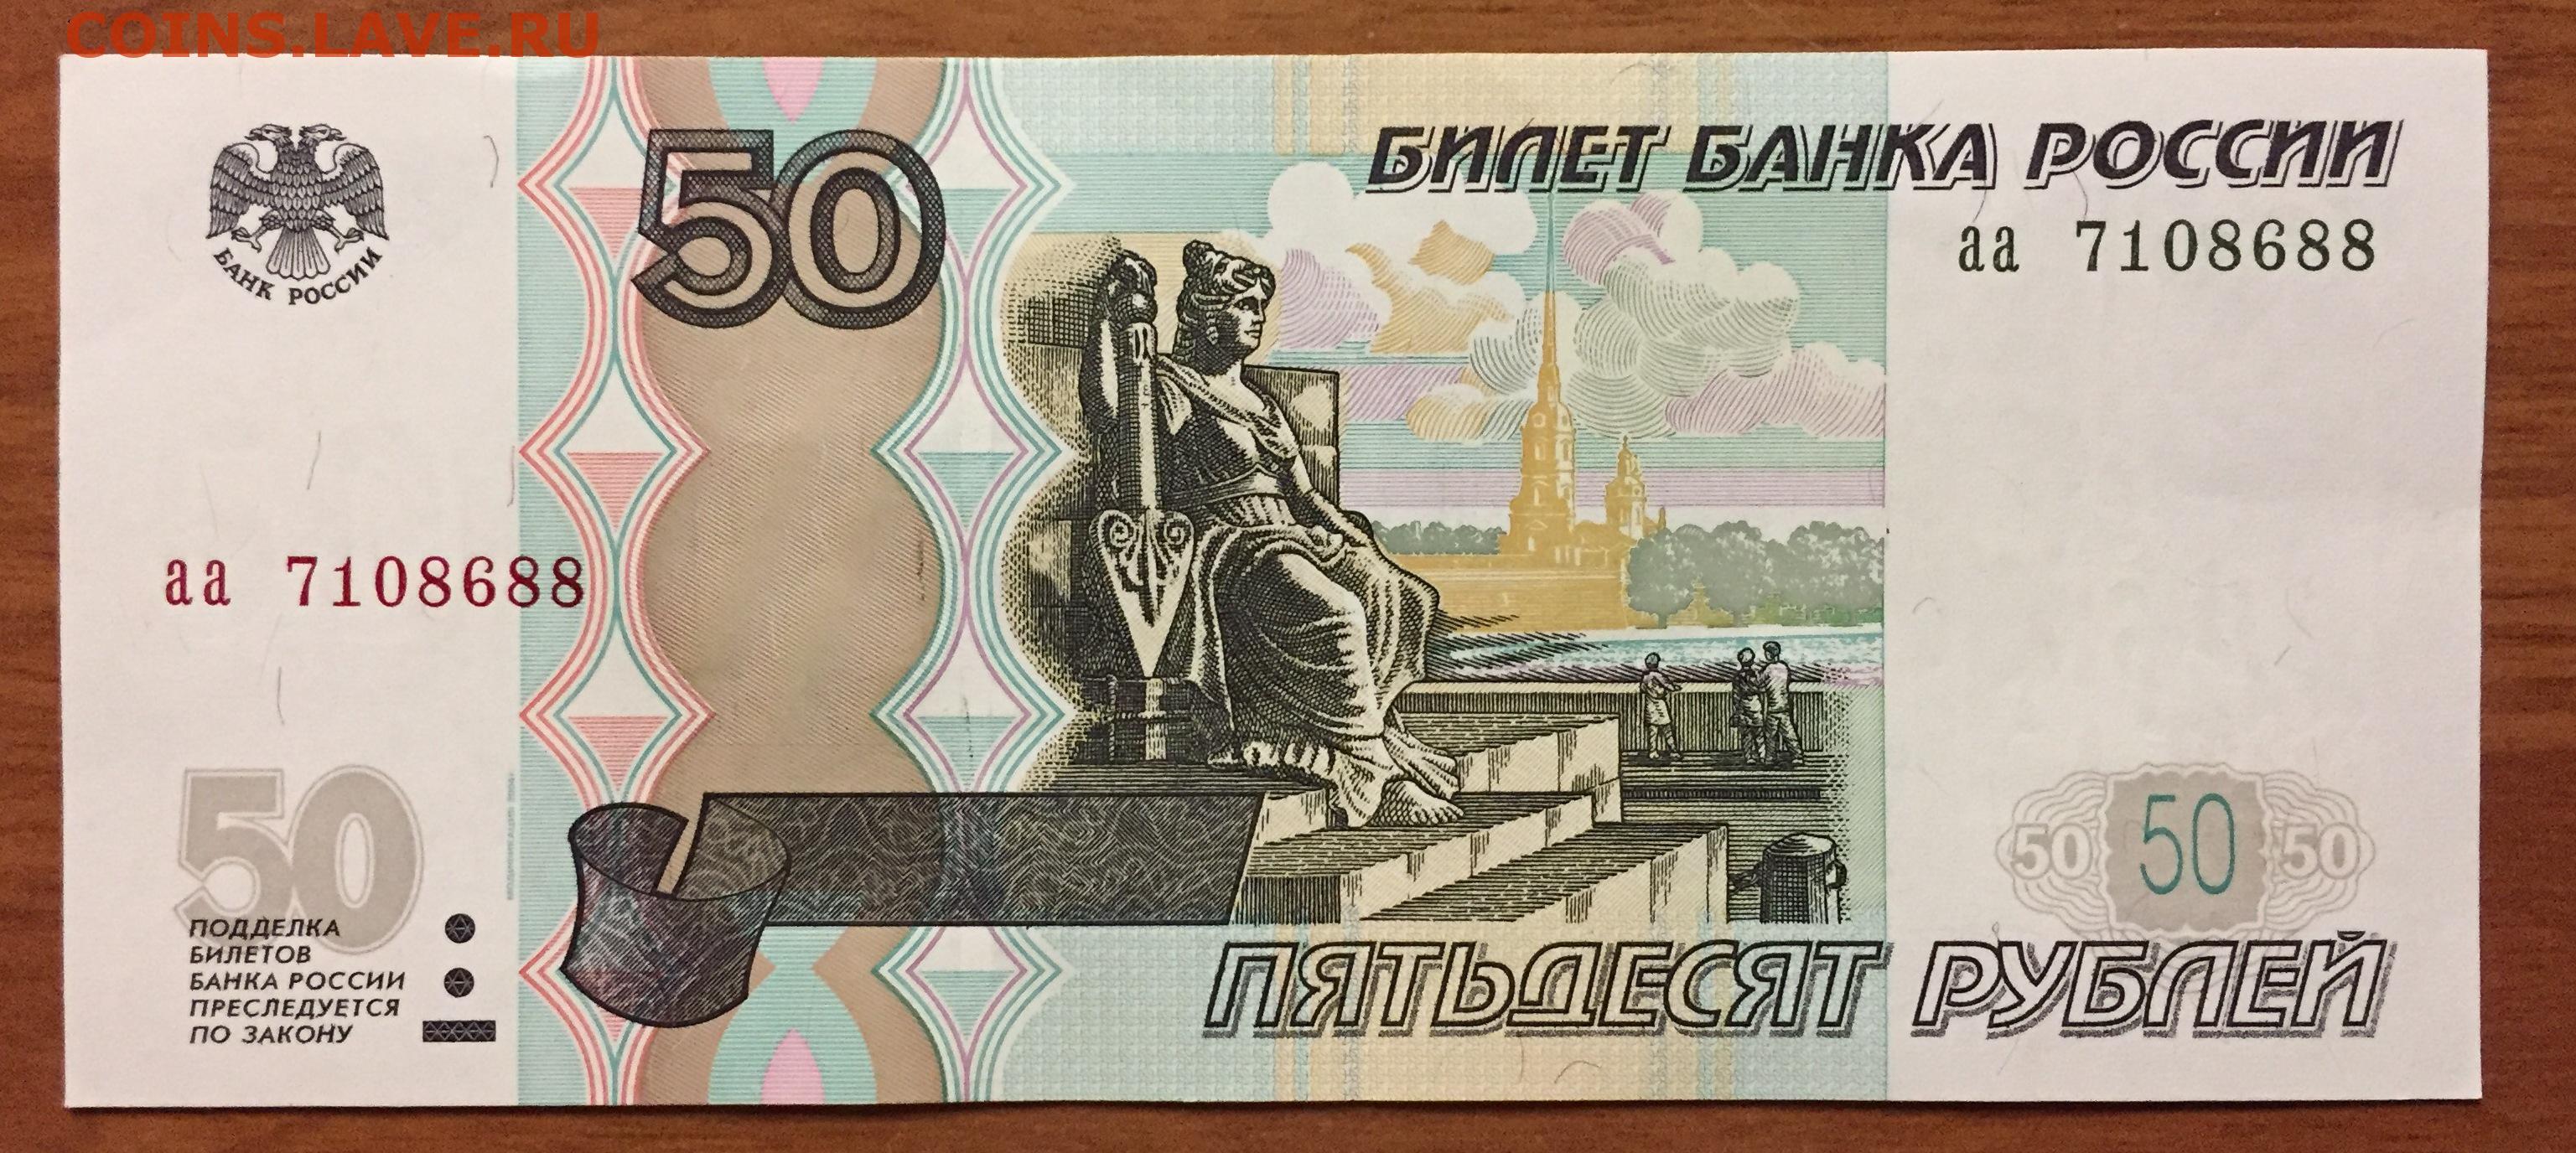 35 50 в рублях